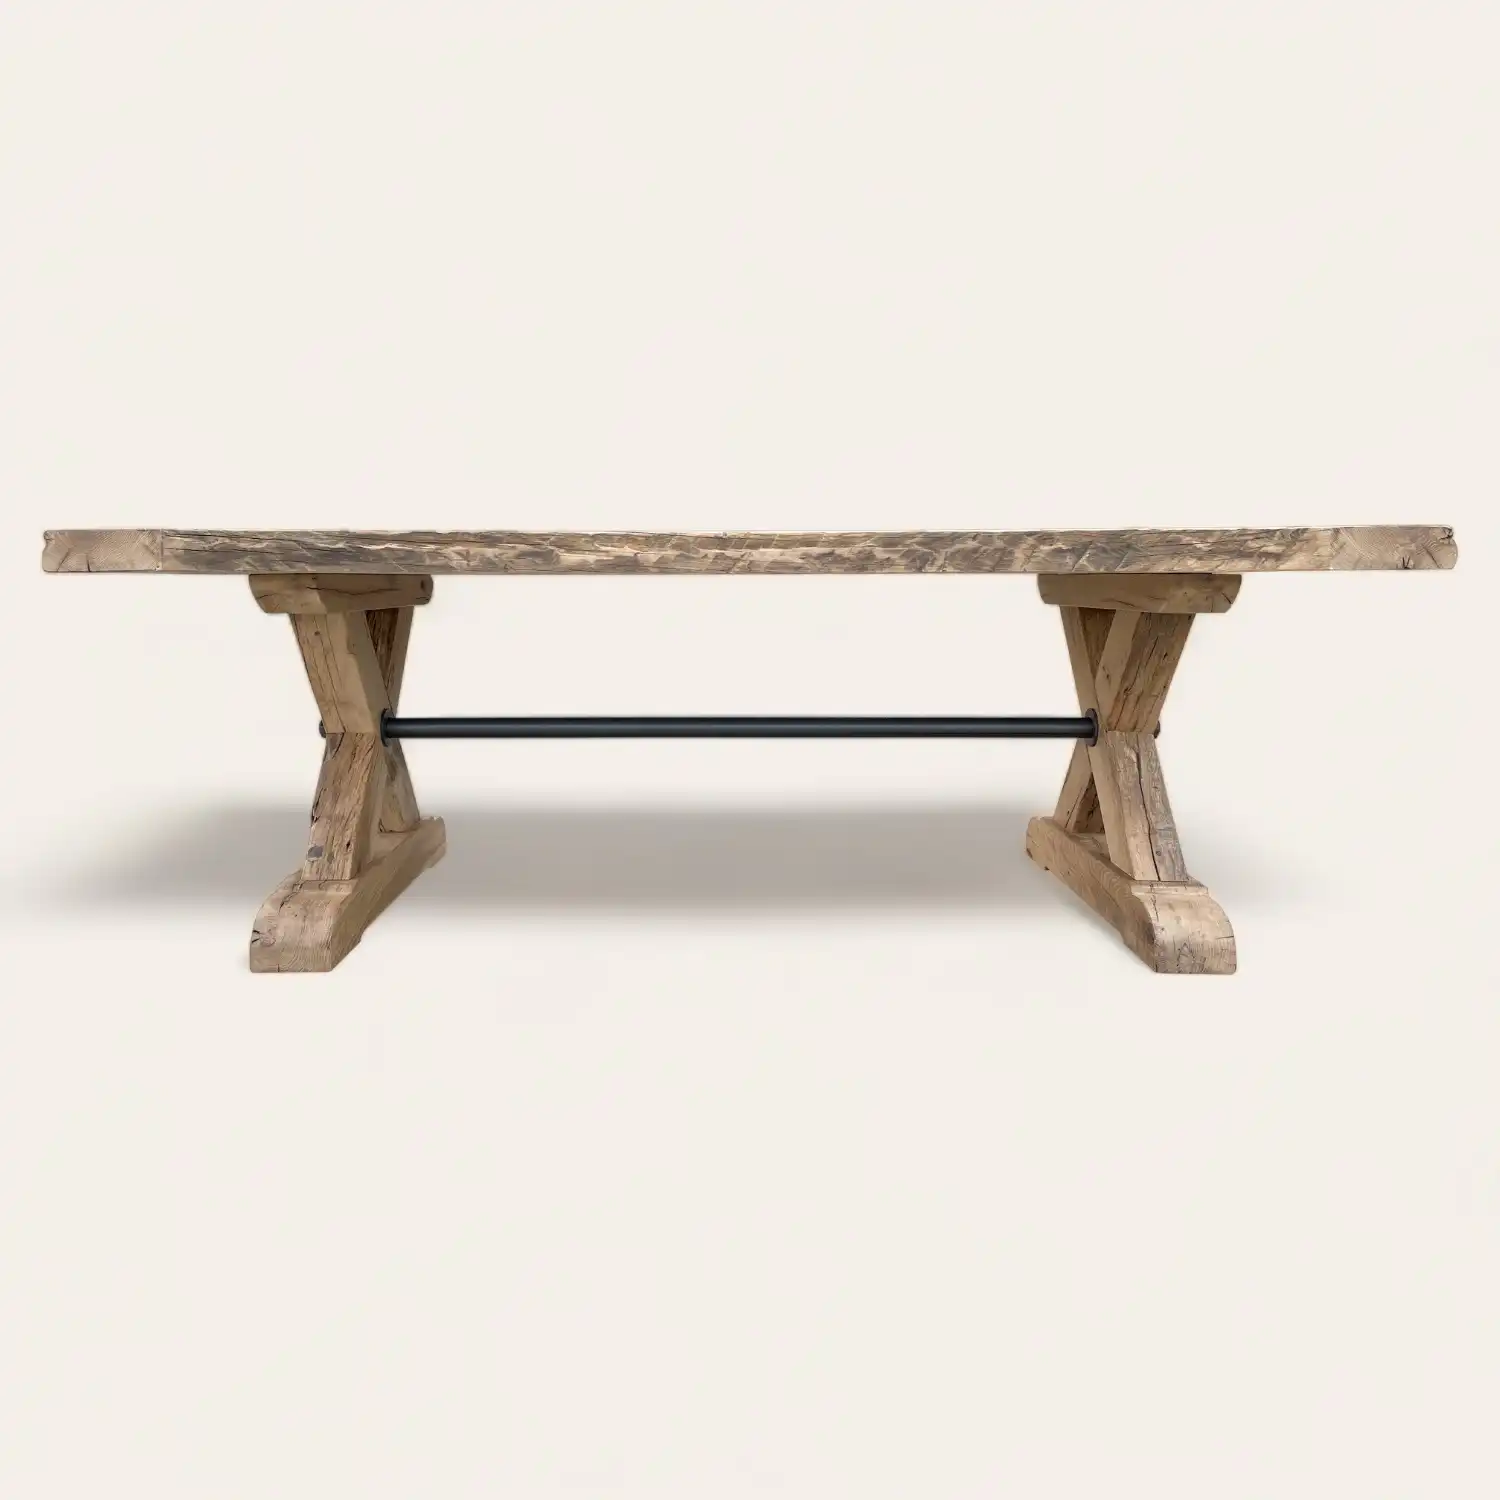 Une table à manger en bois rustique avec une base en métal.